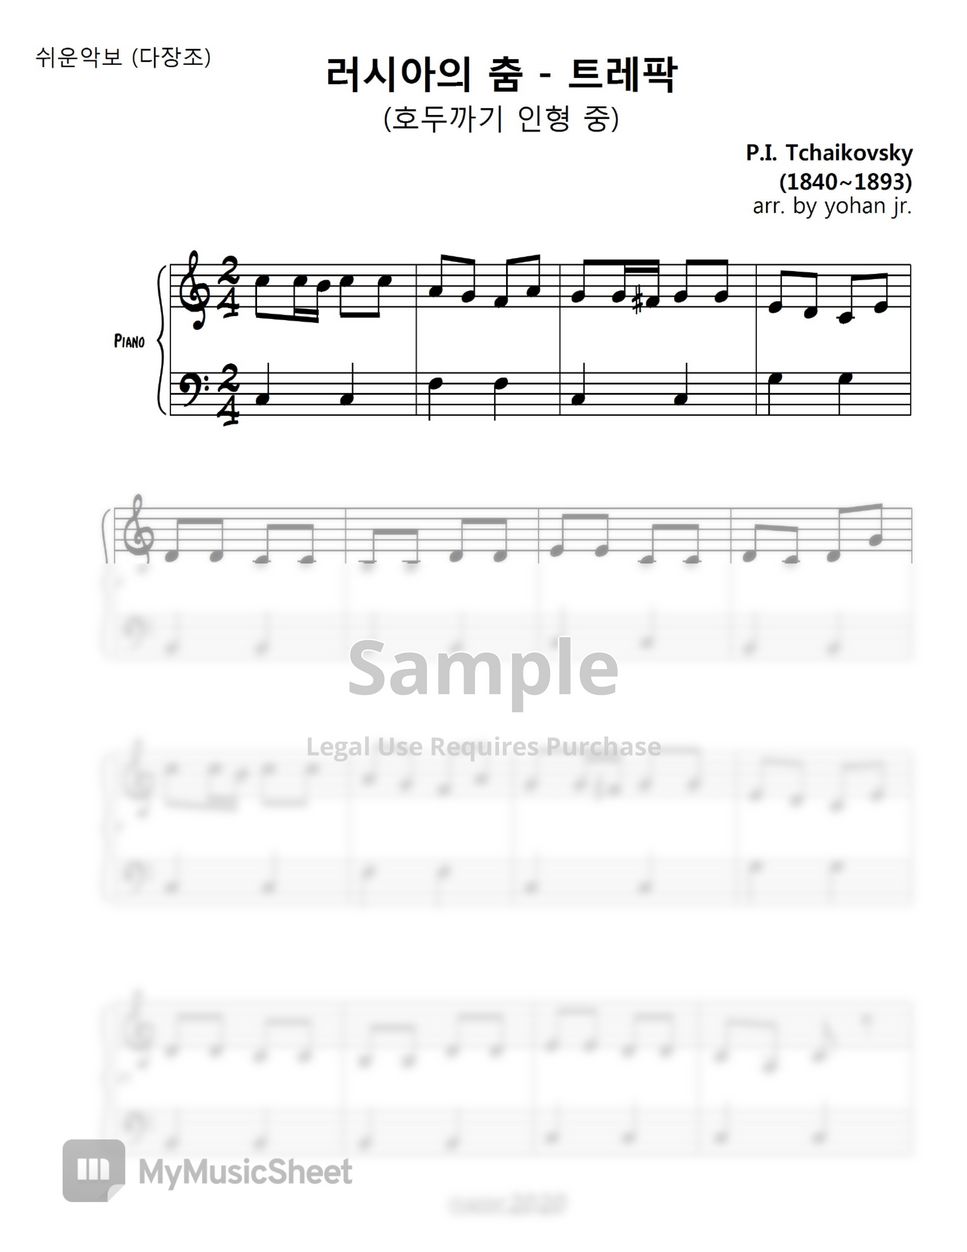 Tchaikovsky - Nutcracker Trepak (easy piano in C) by classic2020